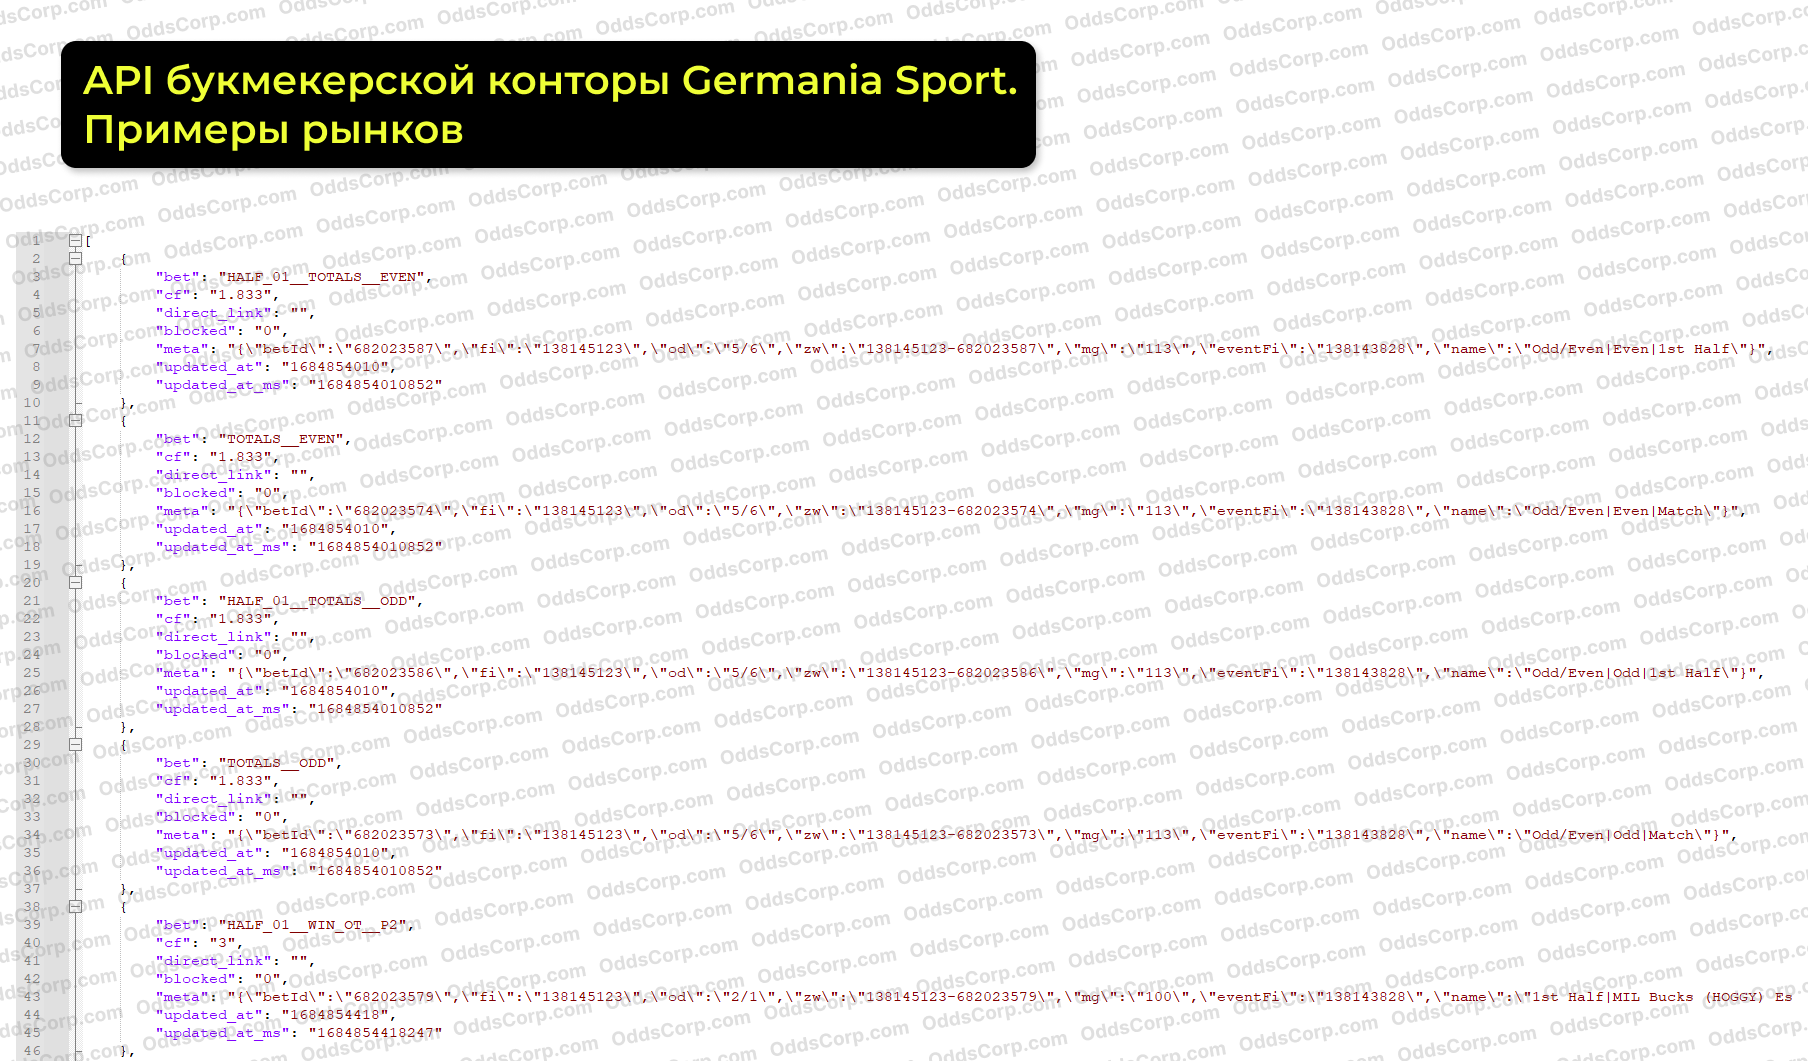 germania-sport-api-rynki.png